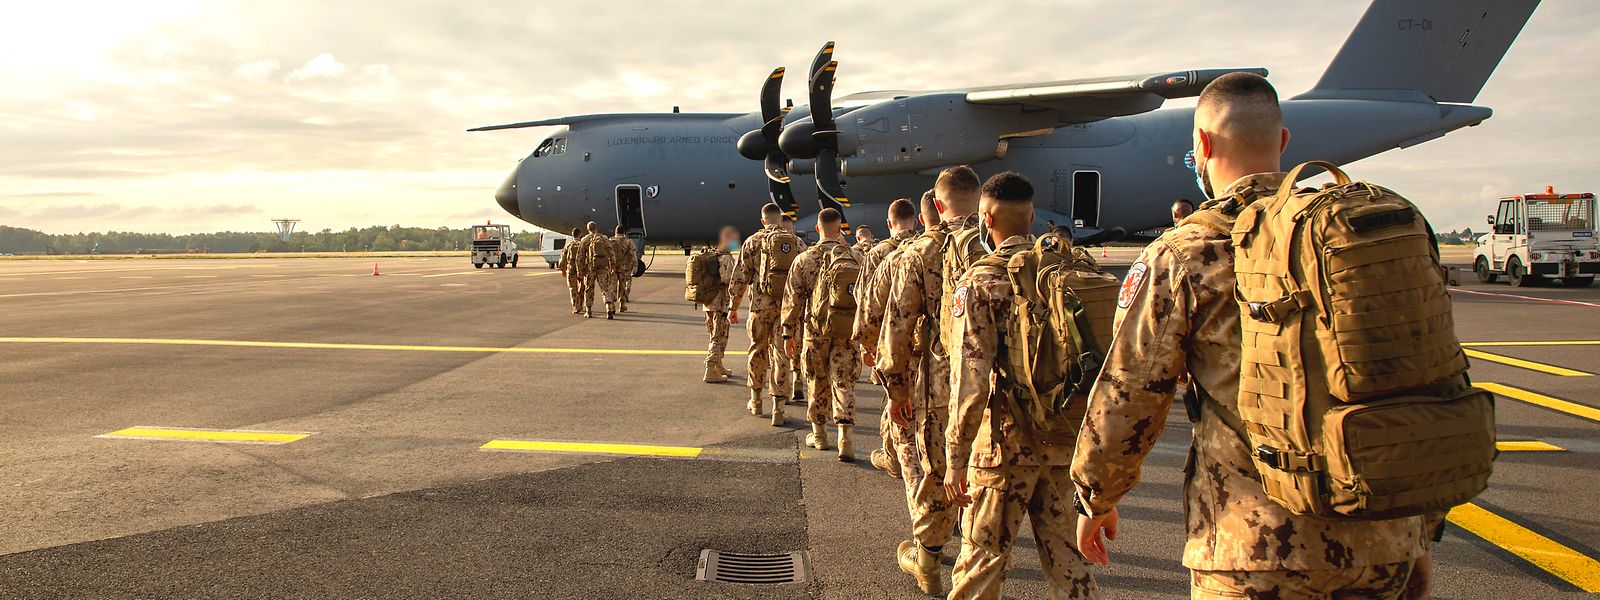 C'est depuis le Findel que des soldats luxembourgeois sont partis en juin 2021 en direction du Mali.
